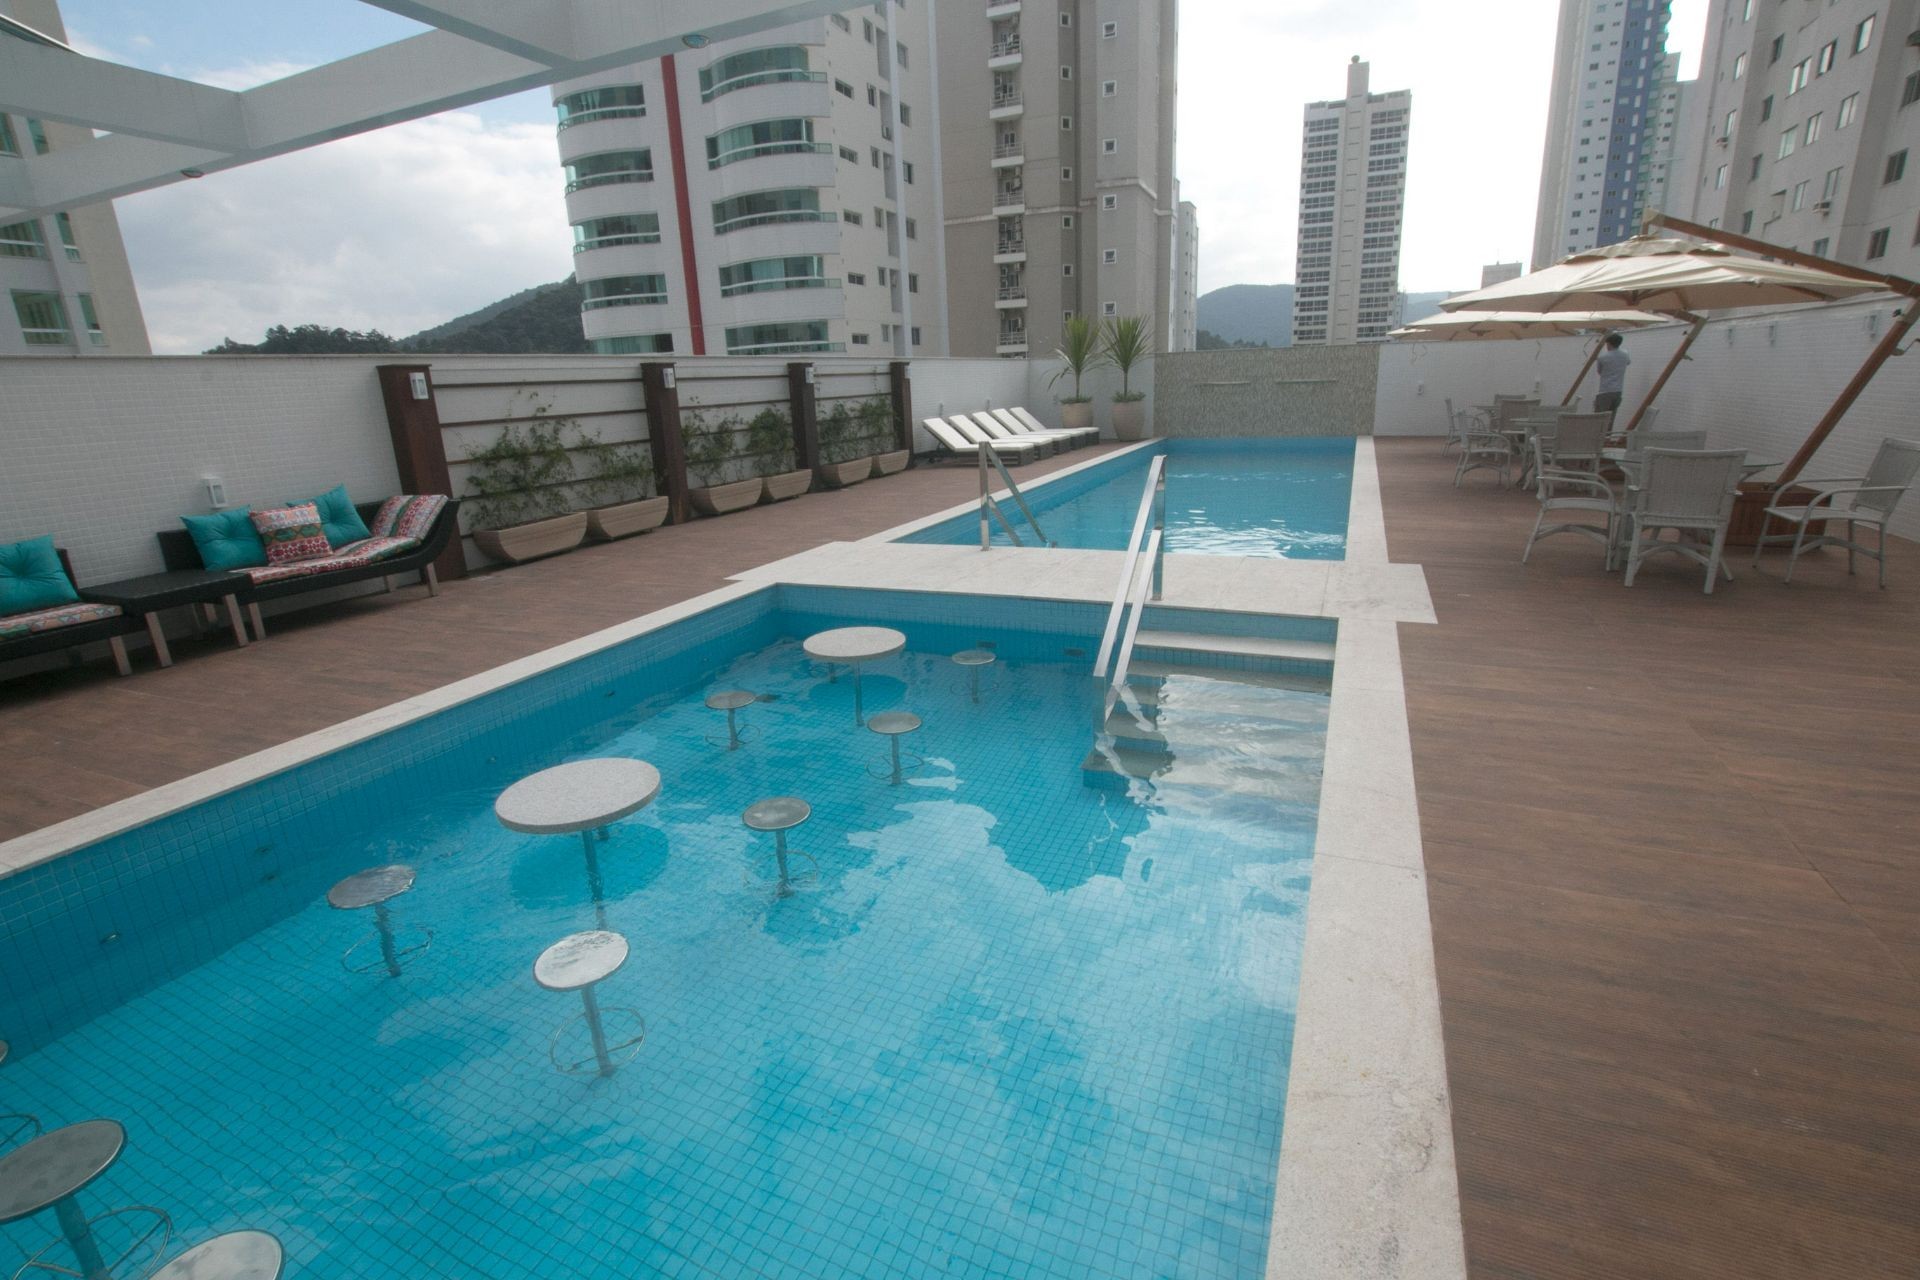 Apartamento Finamente Mobiliado, Equipado e Decorado  Localizado no Centro de Balneário Camboriú-SC